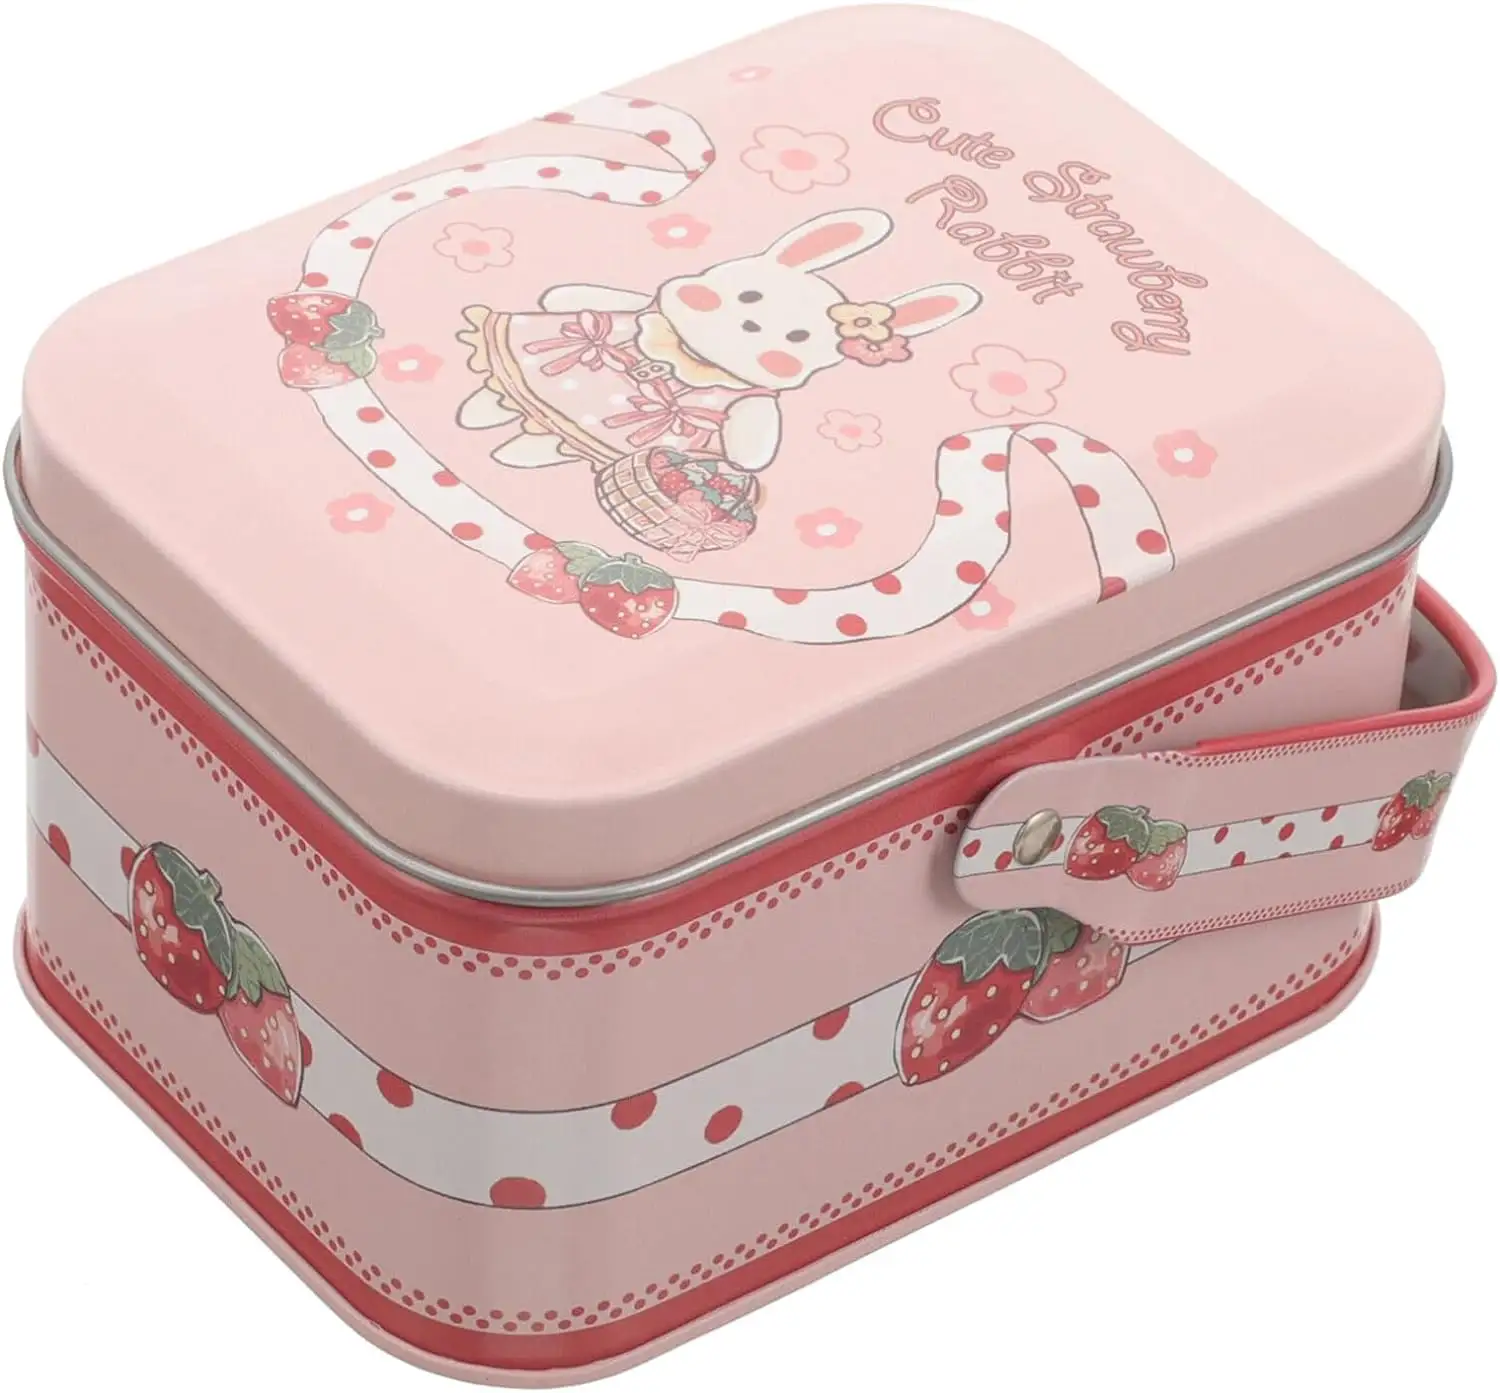 Individuelle Aufbewahrungs-Zinnbox entzückende rosa Zinnboxen mit Griff